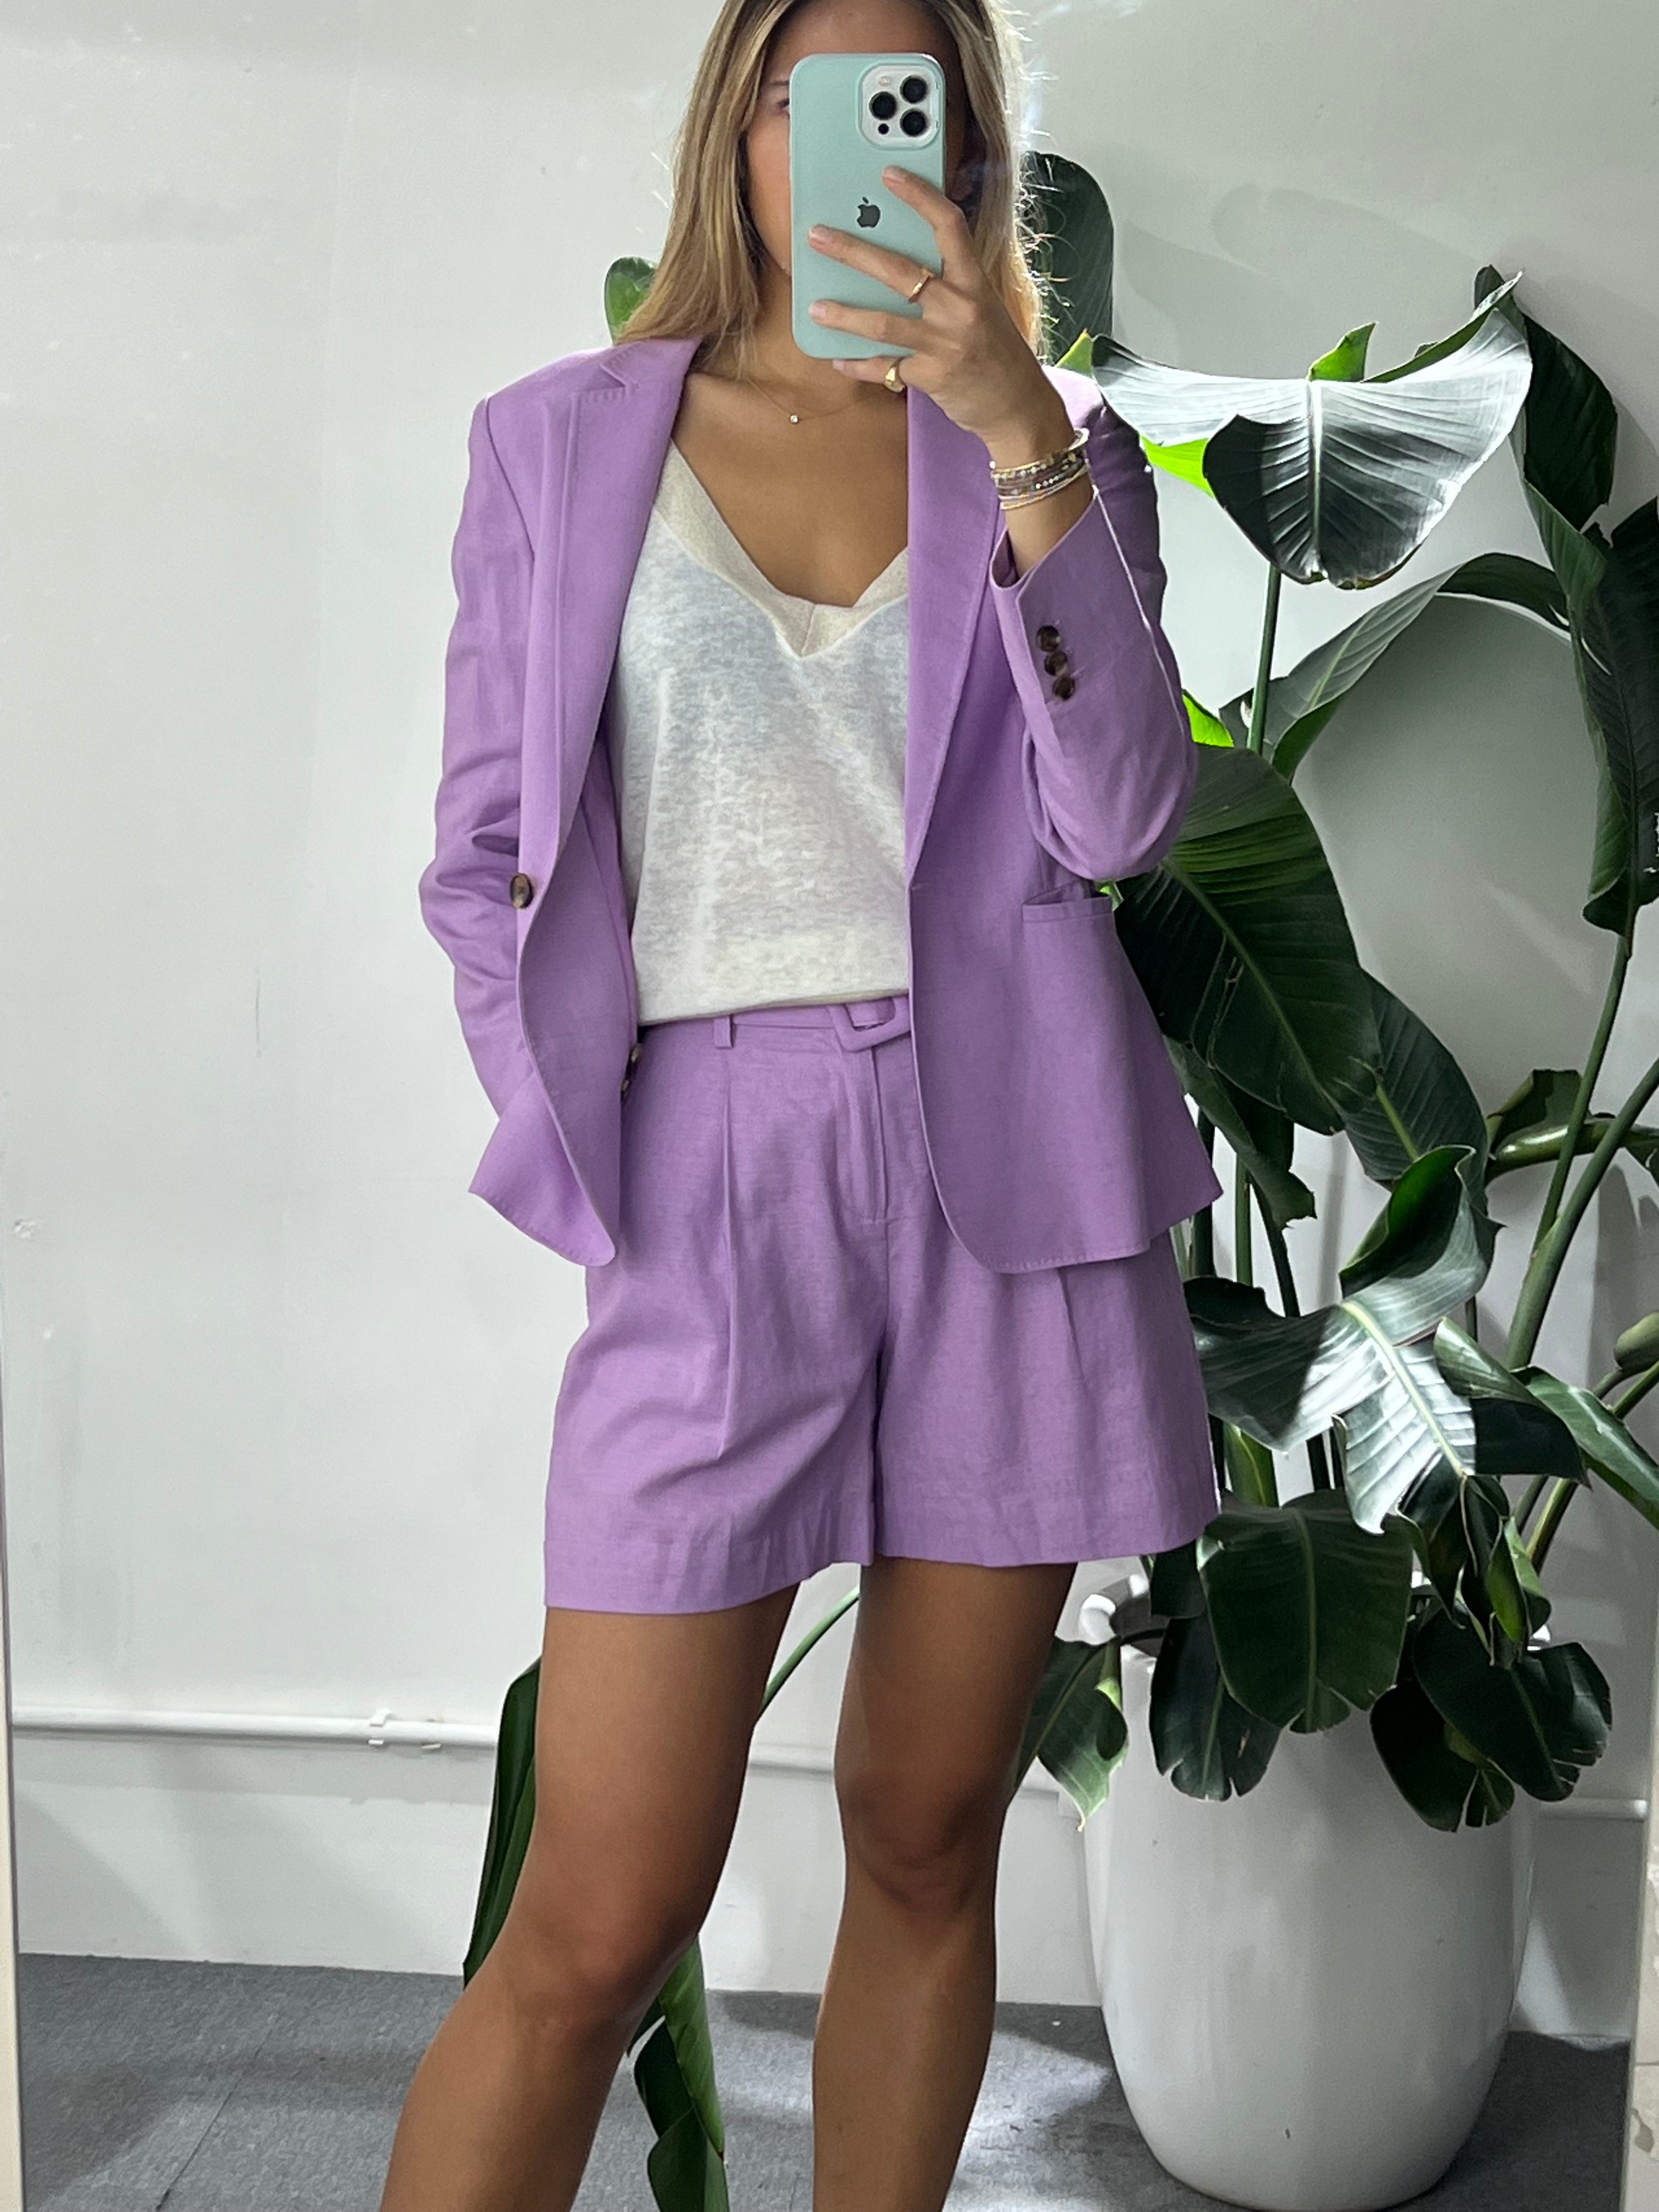 Stylish "Nova" Cotton Linen Shorts in Pastel Violet by Gosia Orlowska